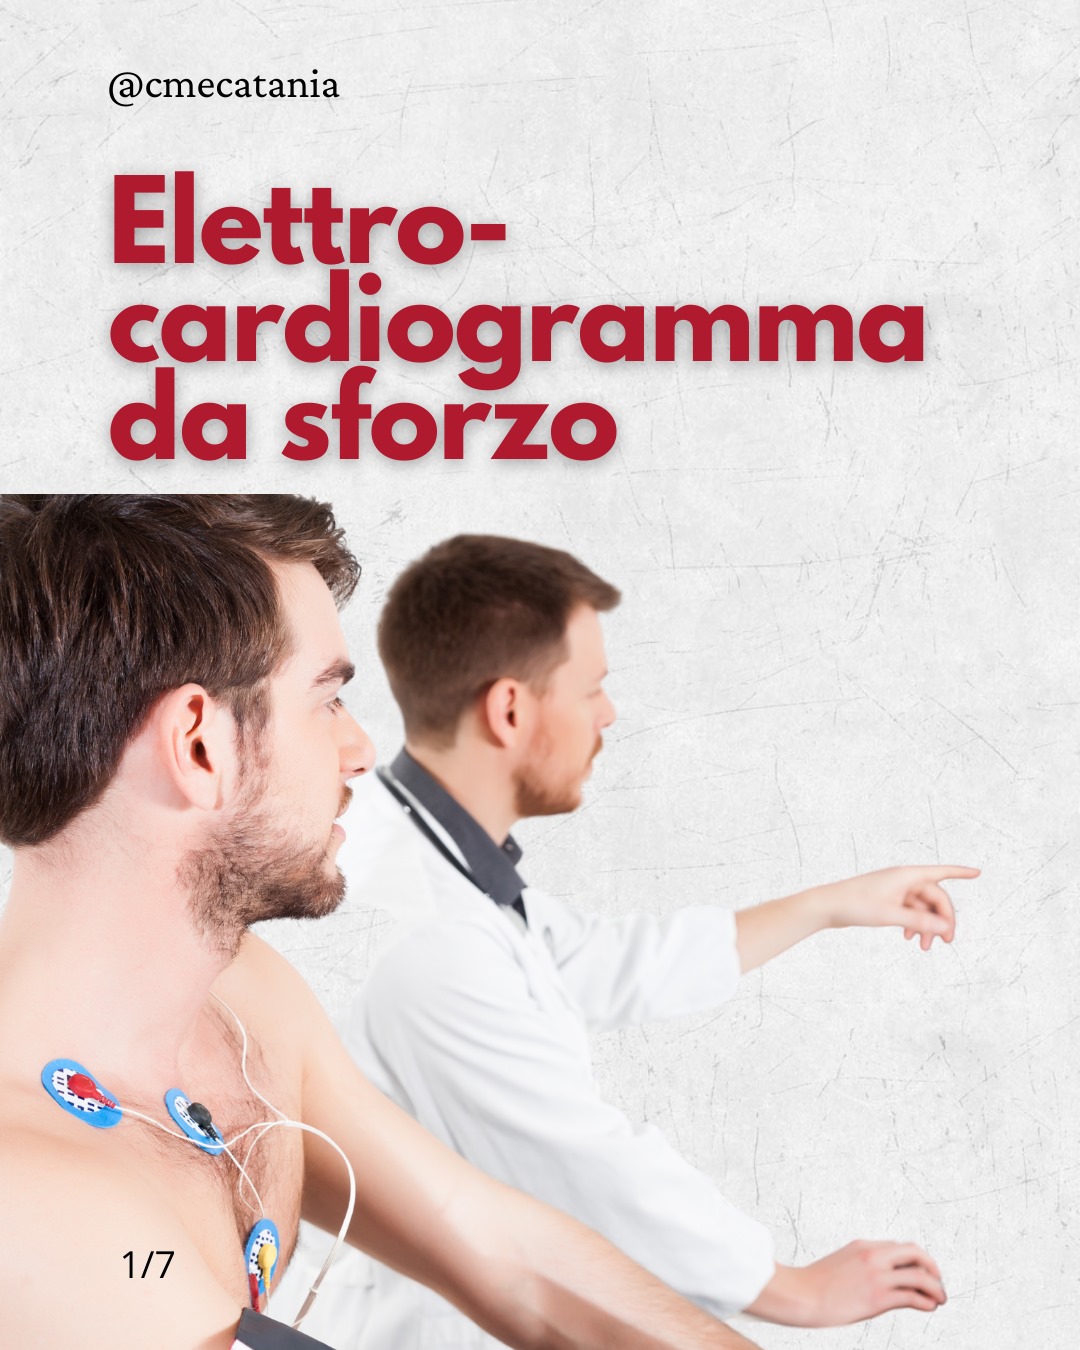 In cosa consiste l'elettro-cardiogramma da sforzo?